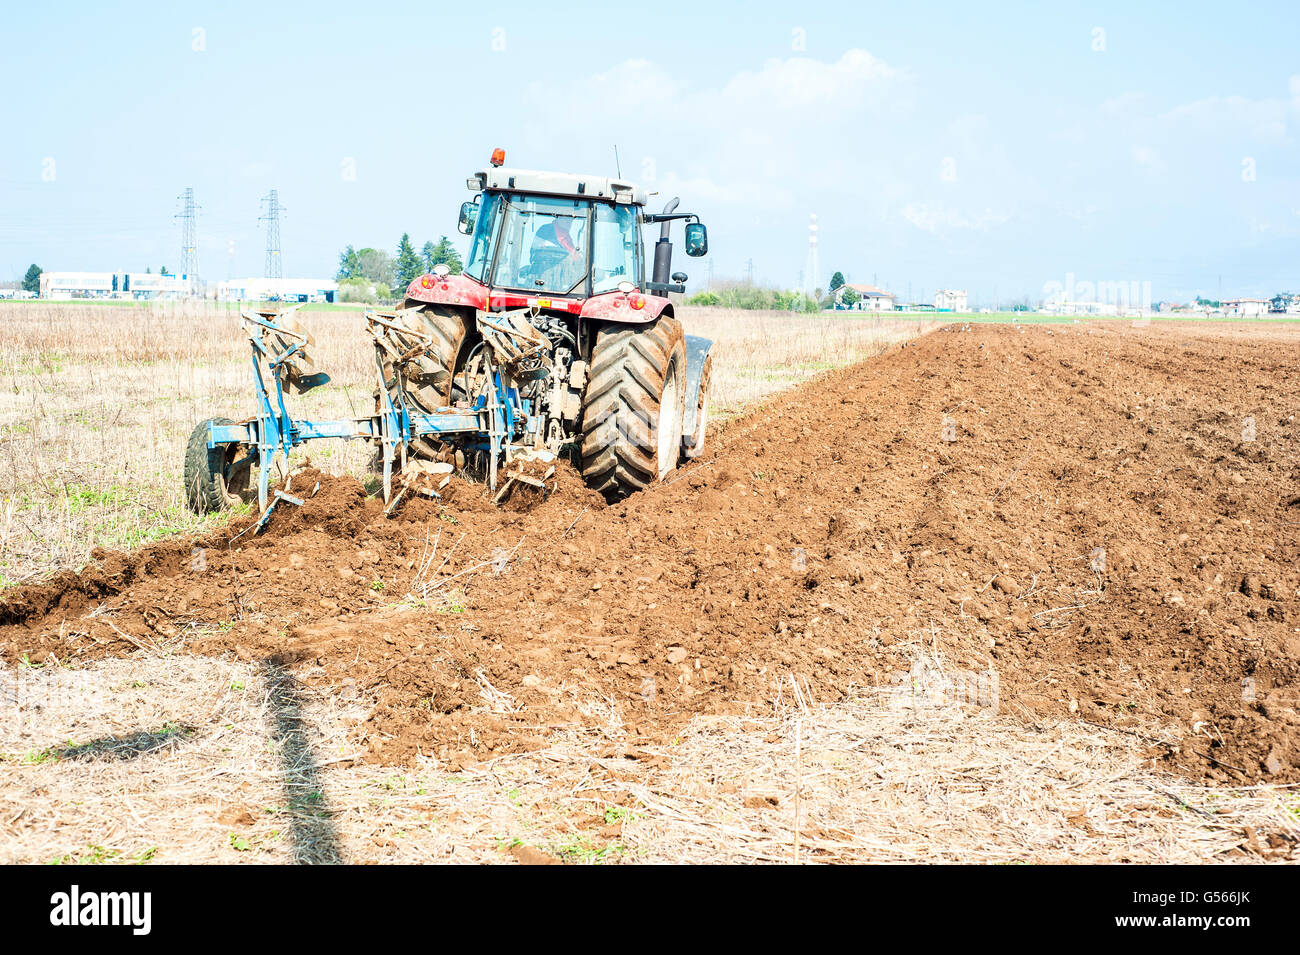 Le travail agricole. Le tracteur laboure le champ de chaume Banque D'Images